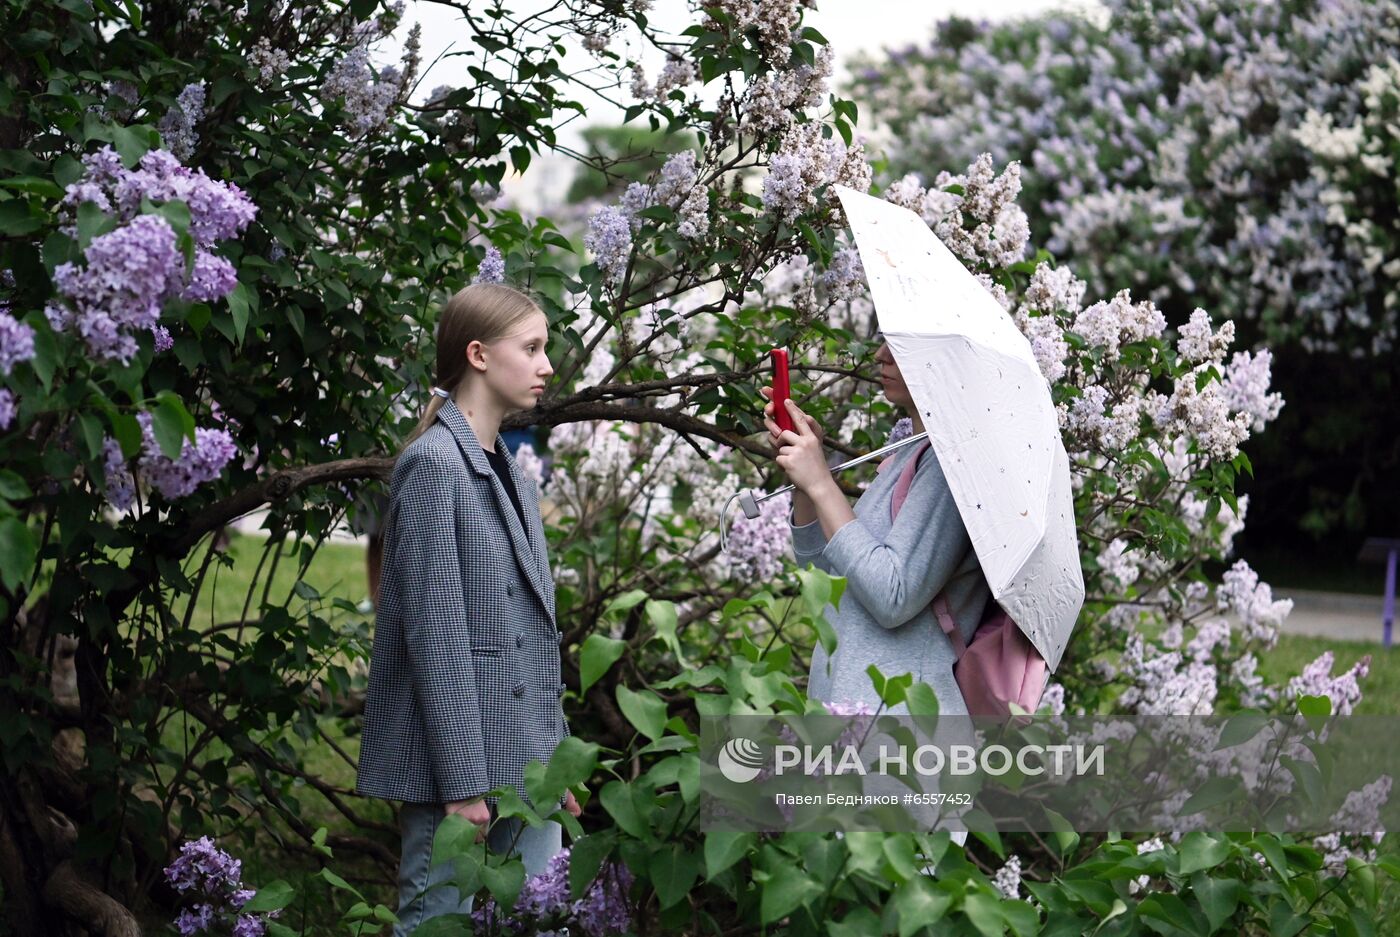 Парк "Сиреневый сад" в Москве